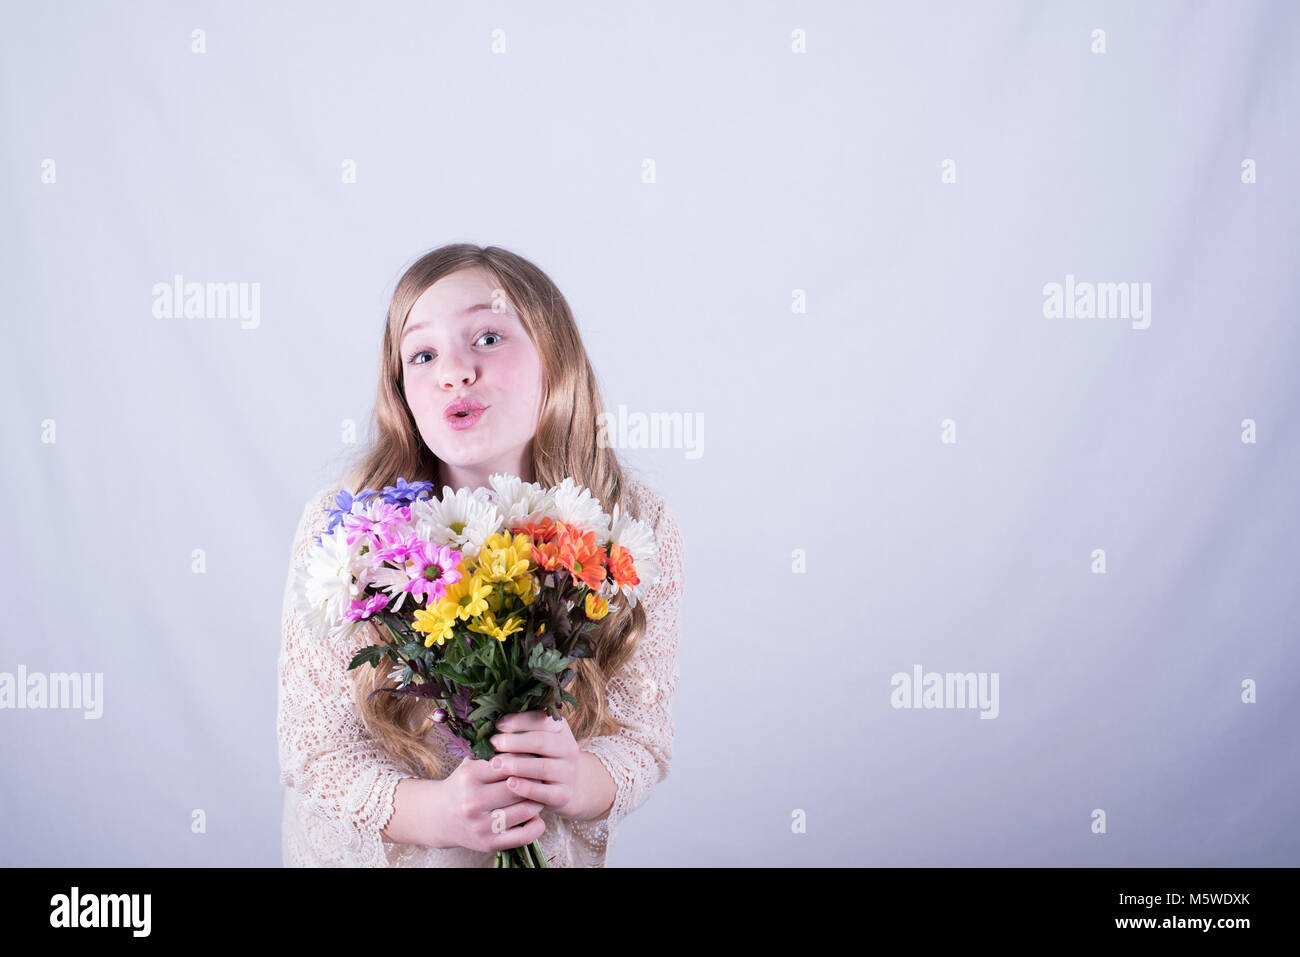 Dodici-anno-vecchia ragazza con lunghi, sporchi capelli biondi holding colorato bouquet di margherite con sguardo di ammirazione contro uno sfondo bianco Foto Stock